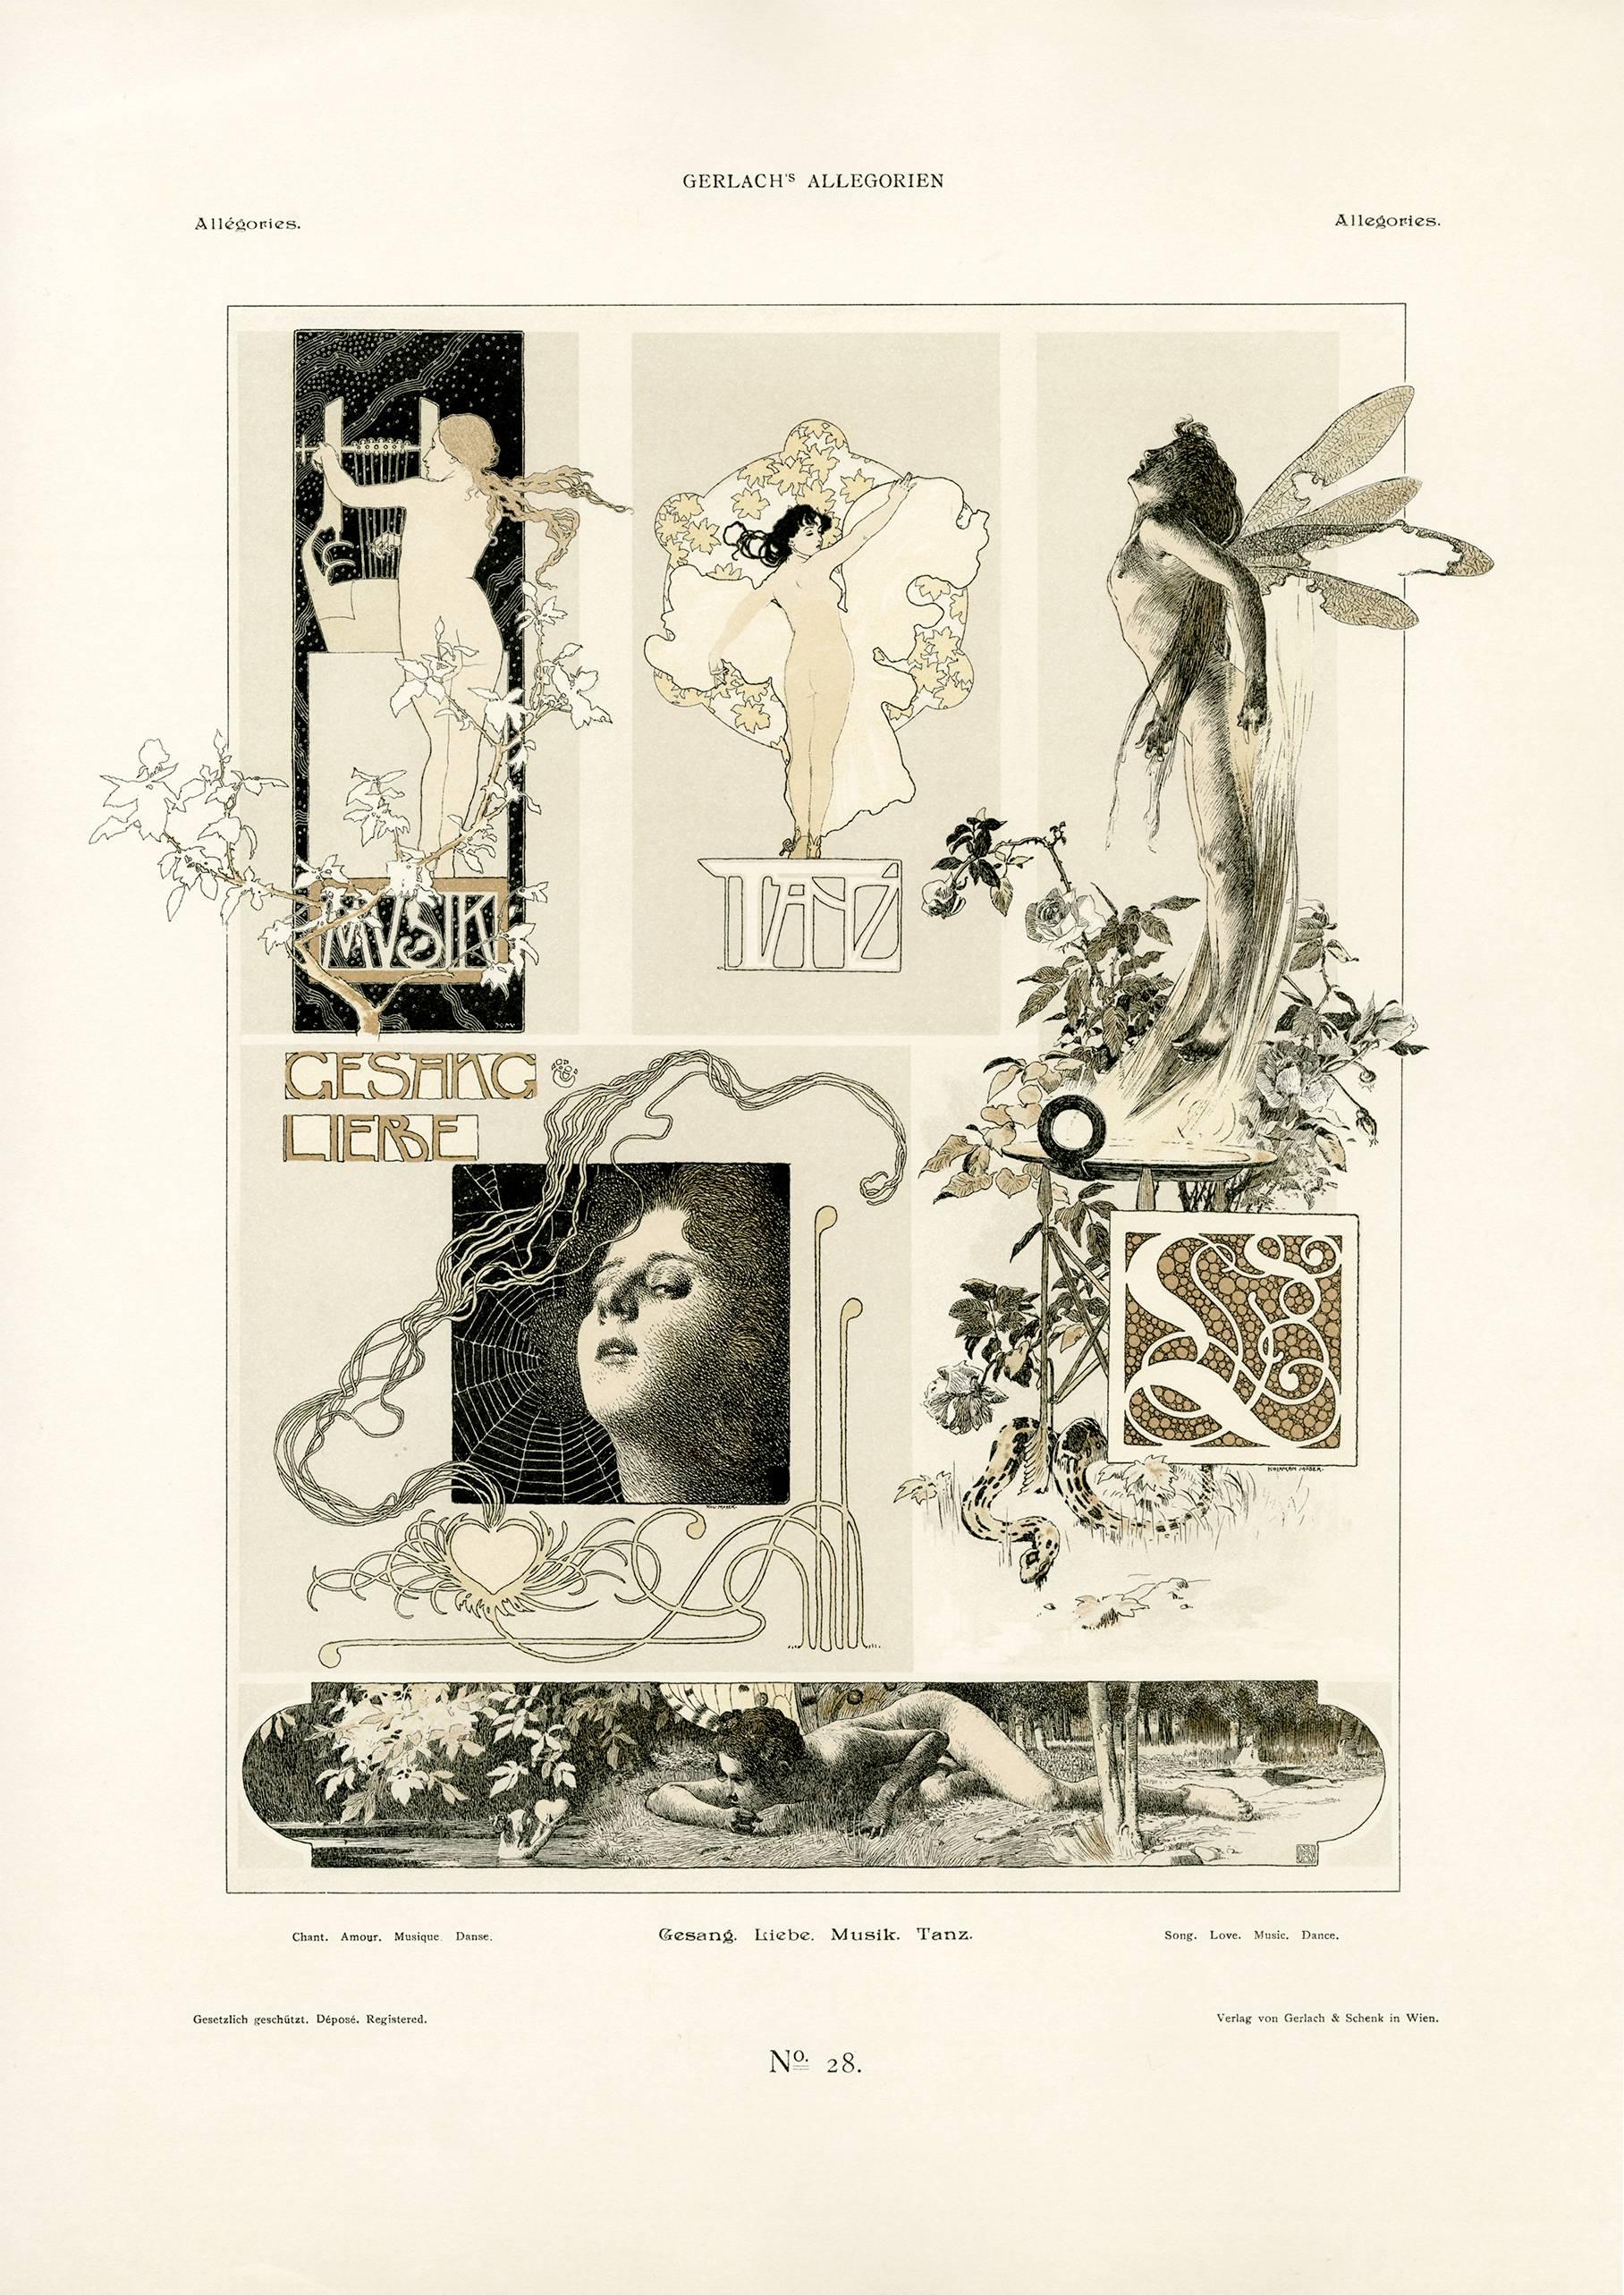 Figurative Print Koloman Moser - Assiette Allegorien de Gerlach n° 20 : Lithographie «ong, Love, Music, Dance »